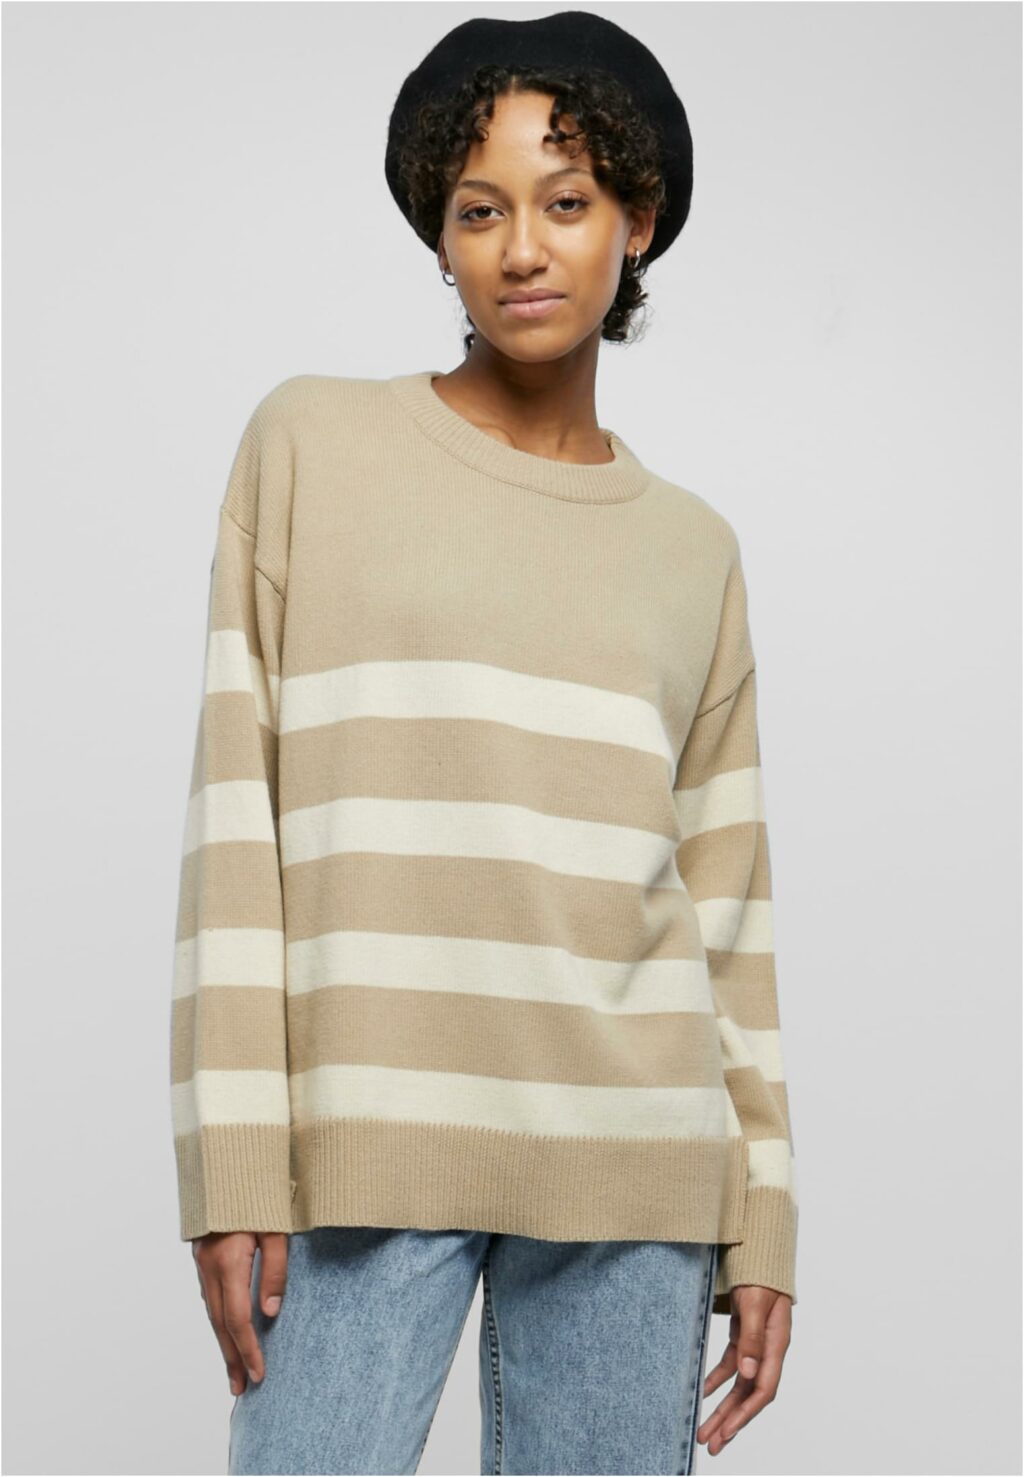 Urban Classics Ladies Striped Knit Crew Sweater wetsand/sand TB6106